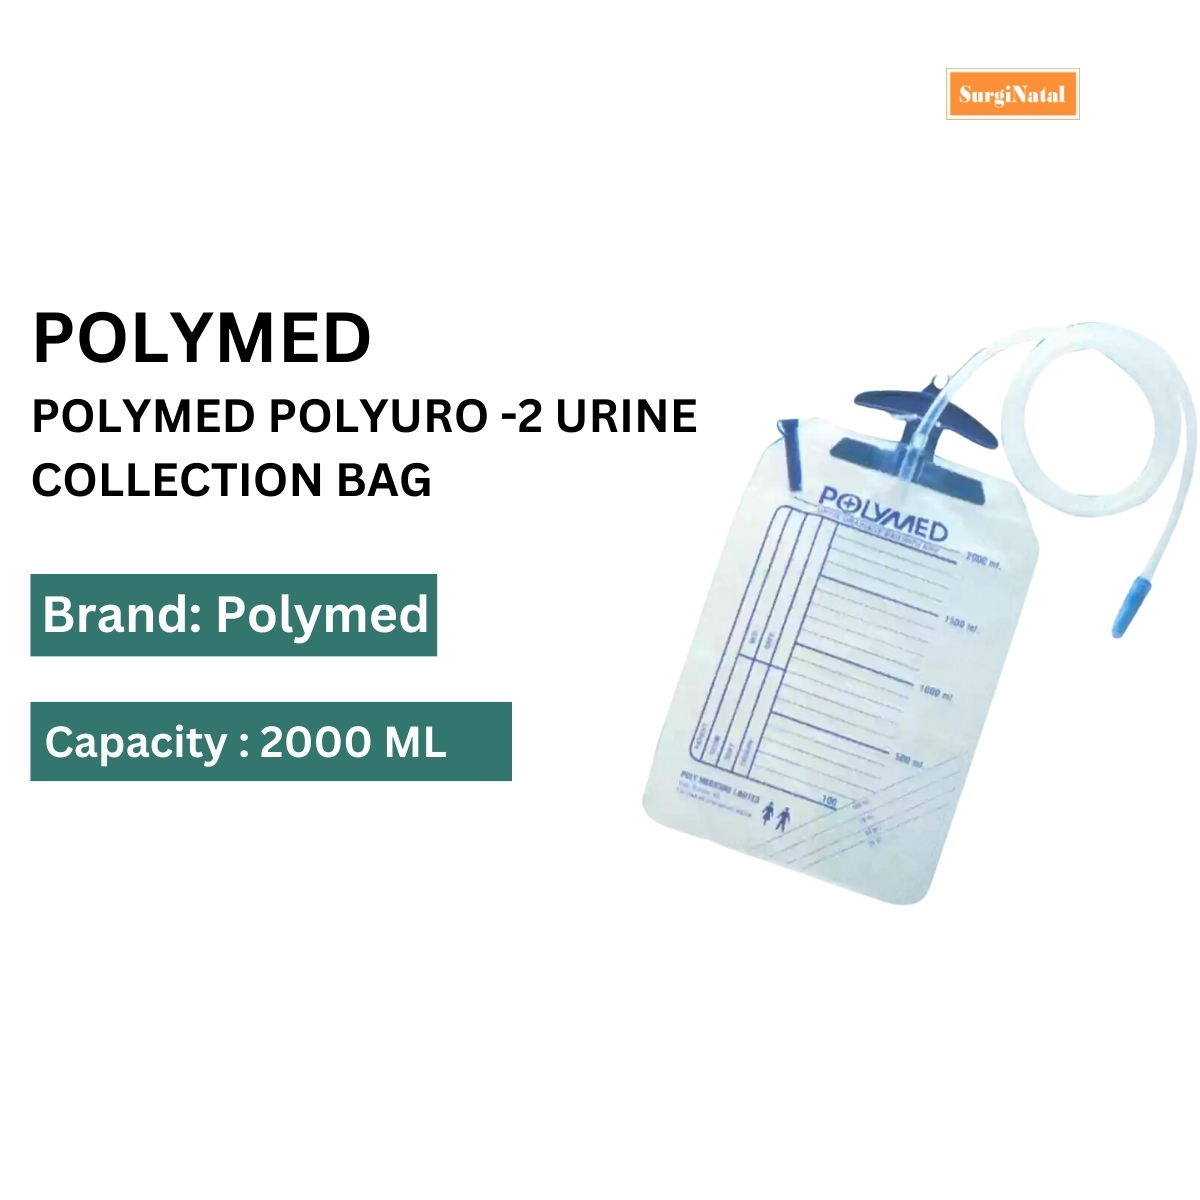  polyuro premium urin bag